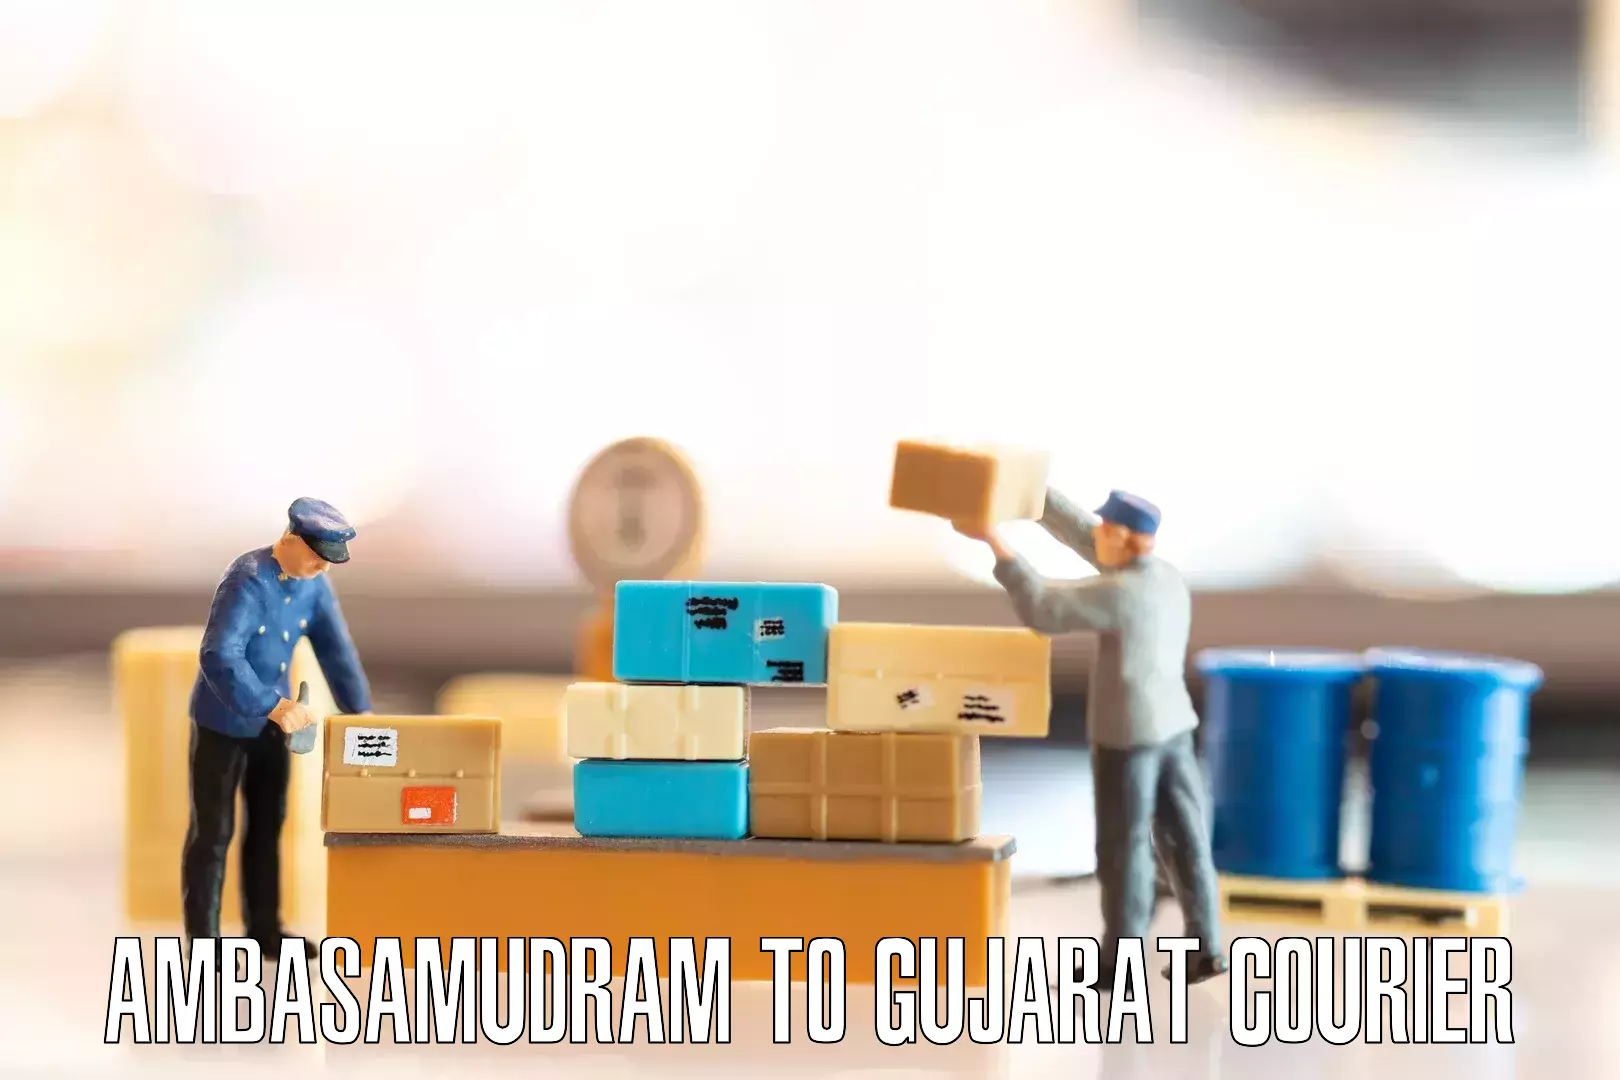 Furniture moving experts Ambasamudram to Gujarat